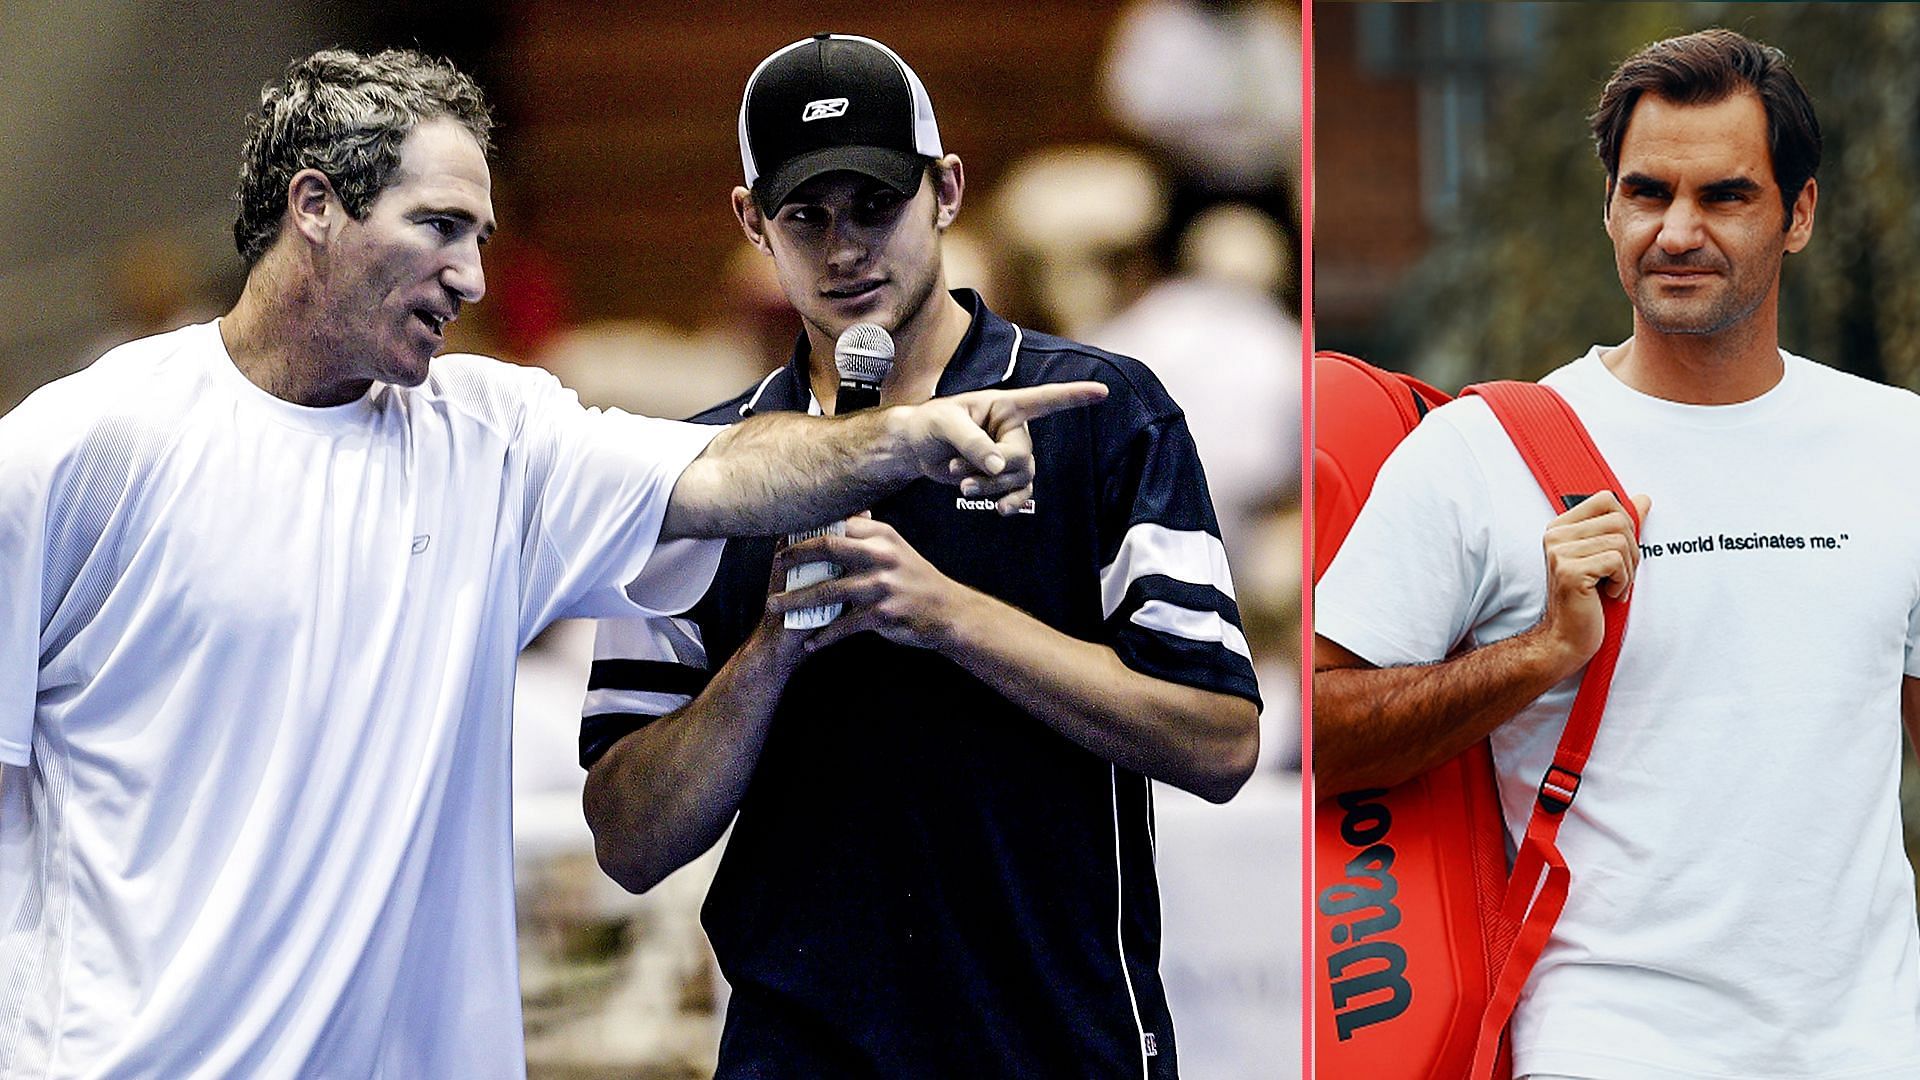 Brad Gilbert, Andy Roddick and Roger Federer